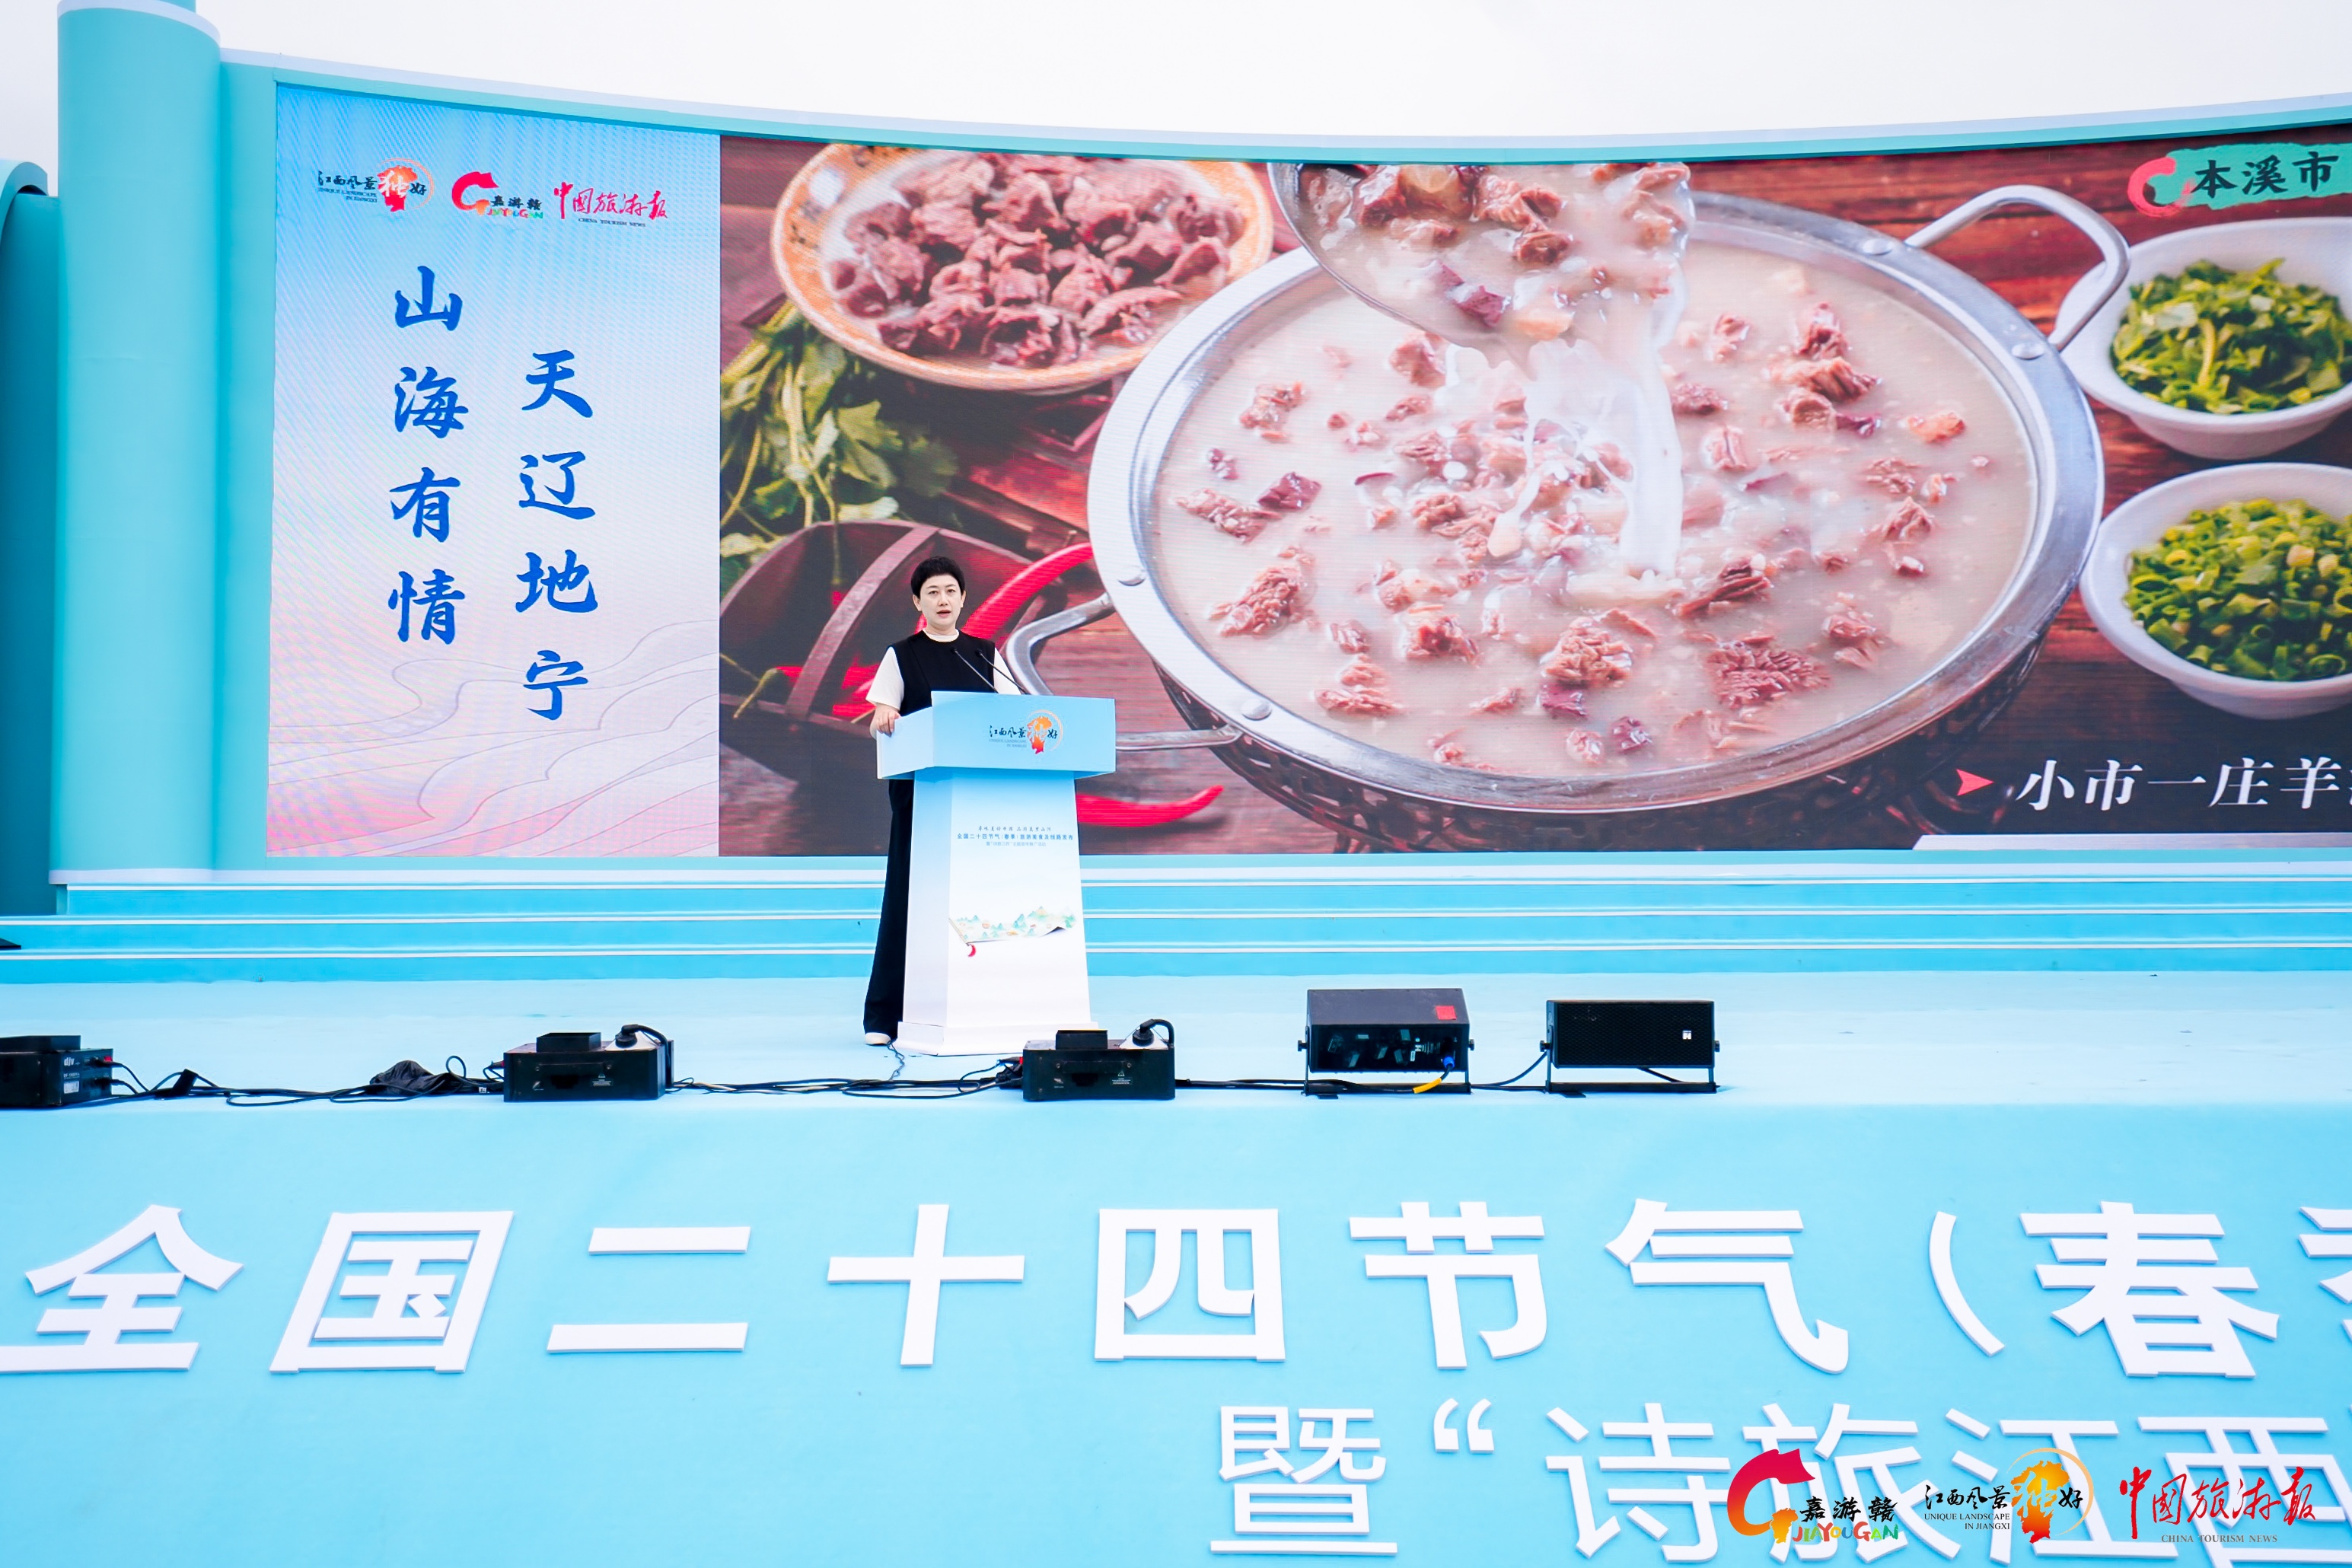 图四 辽宁、重庆、西藏等省市区的现场美食推介.JPG